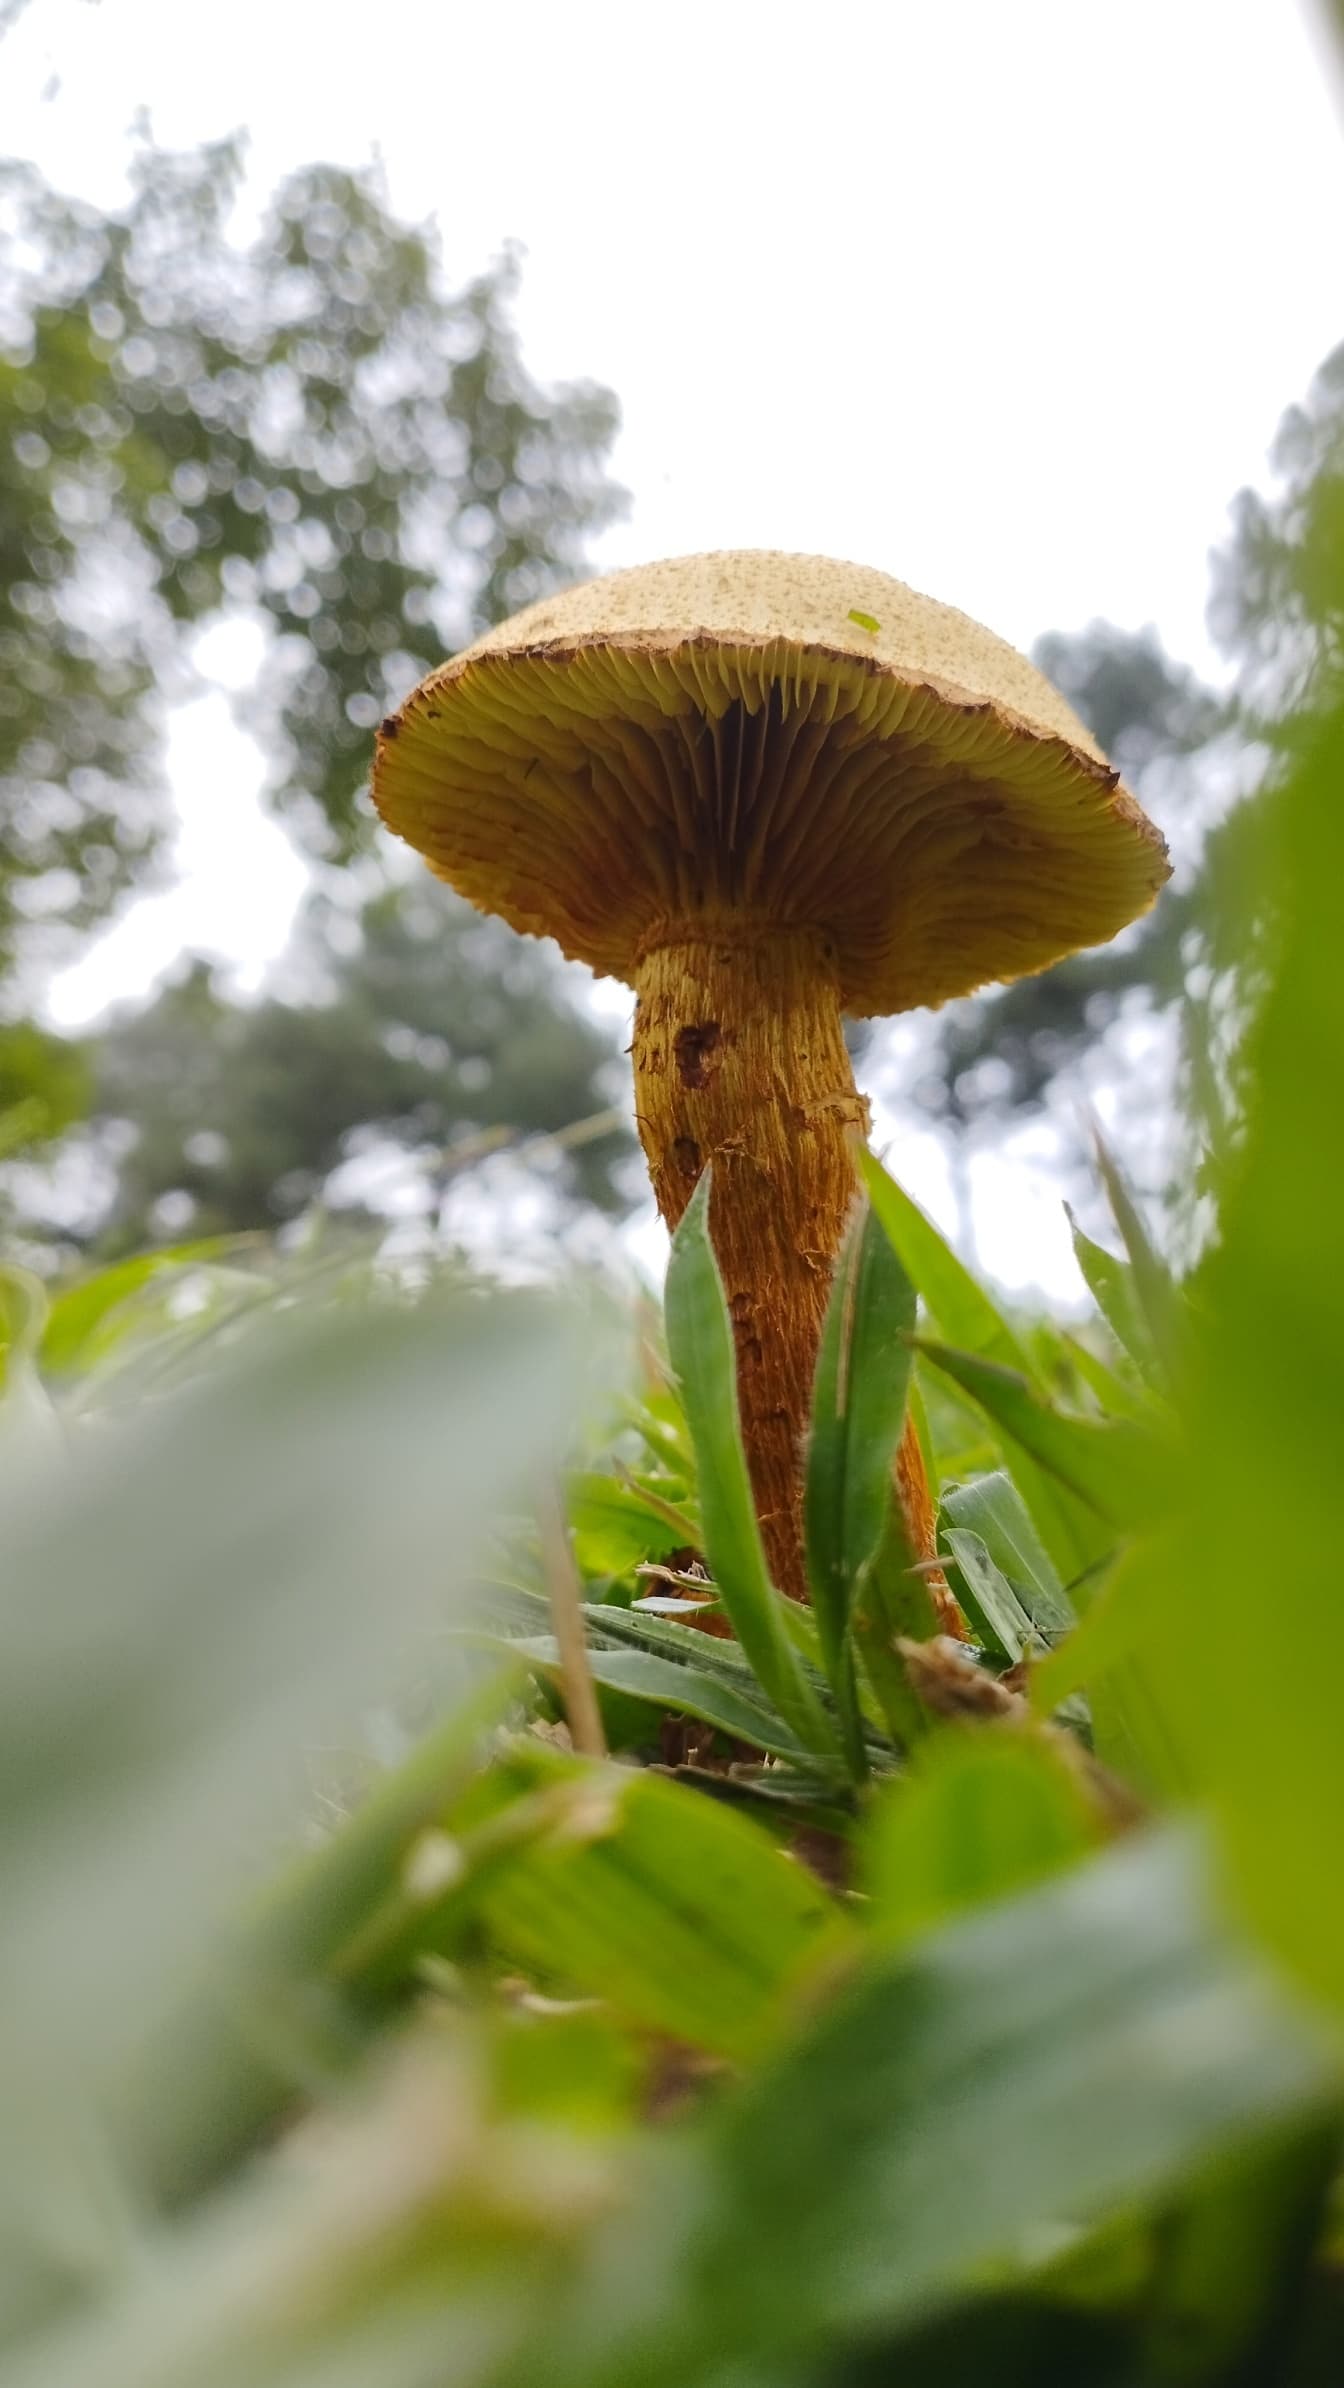 Foto em close-up de um cogumelo marrom-amarelado crescendo na grama